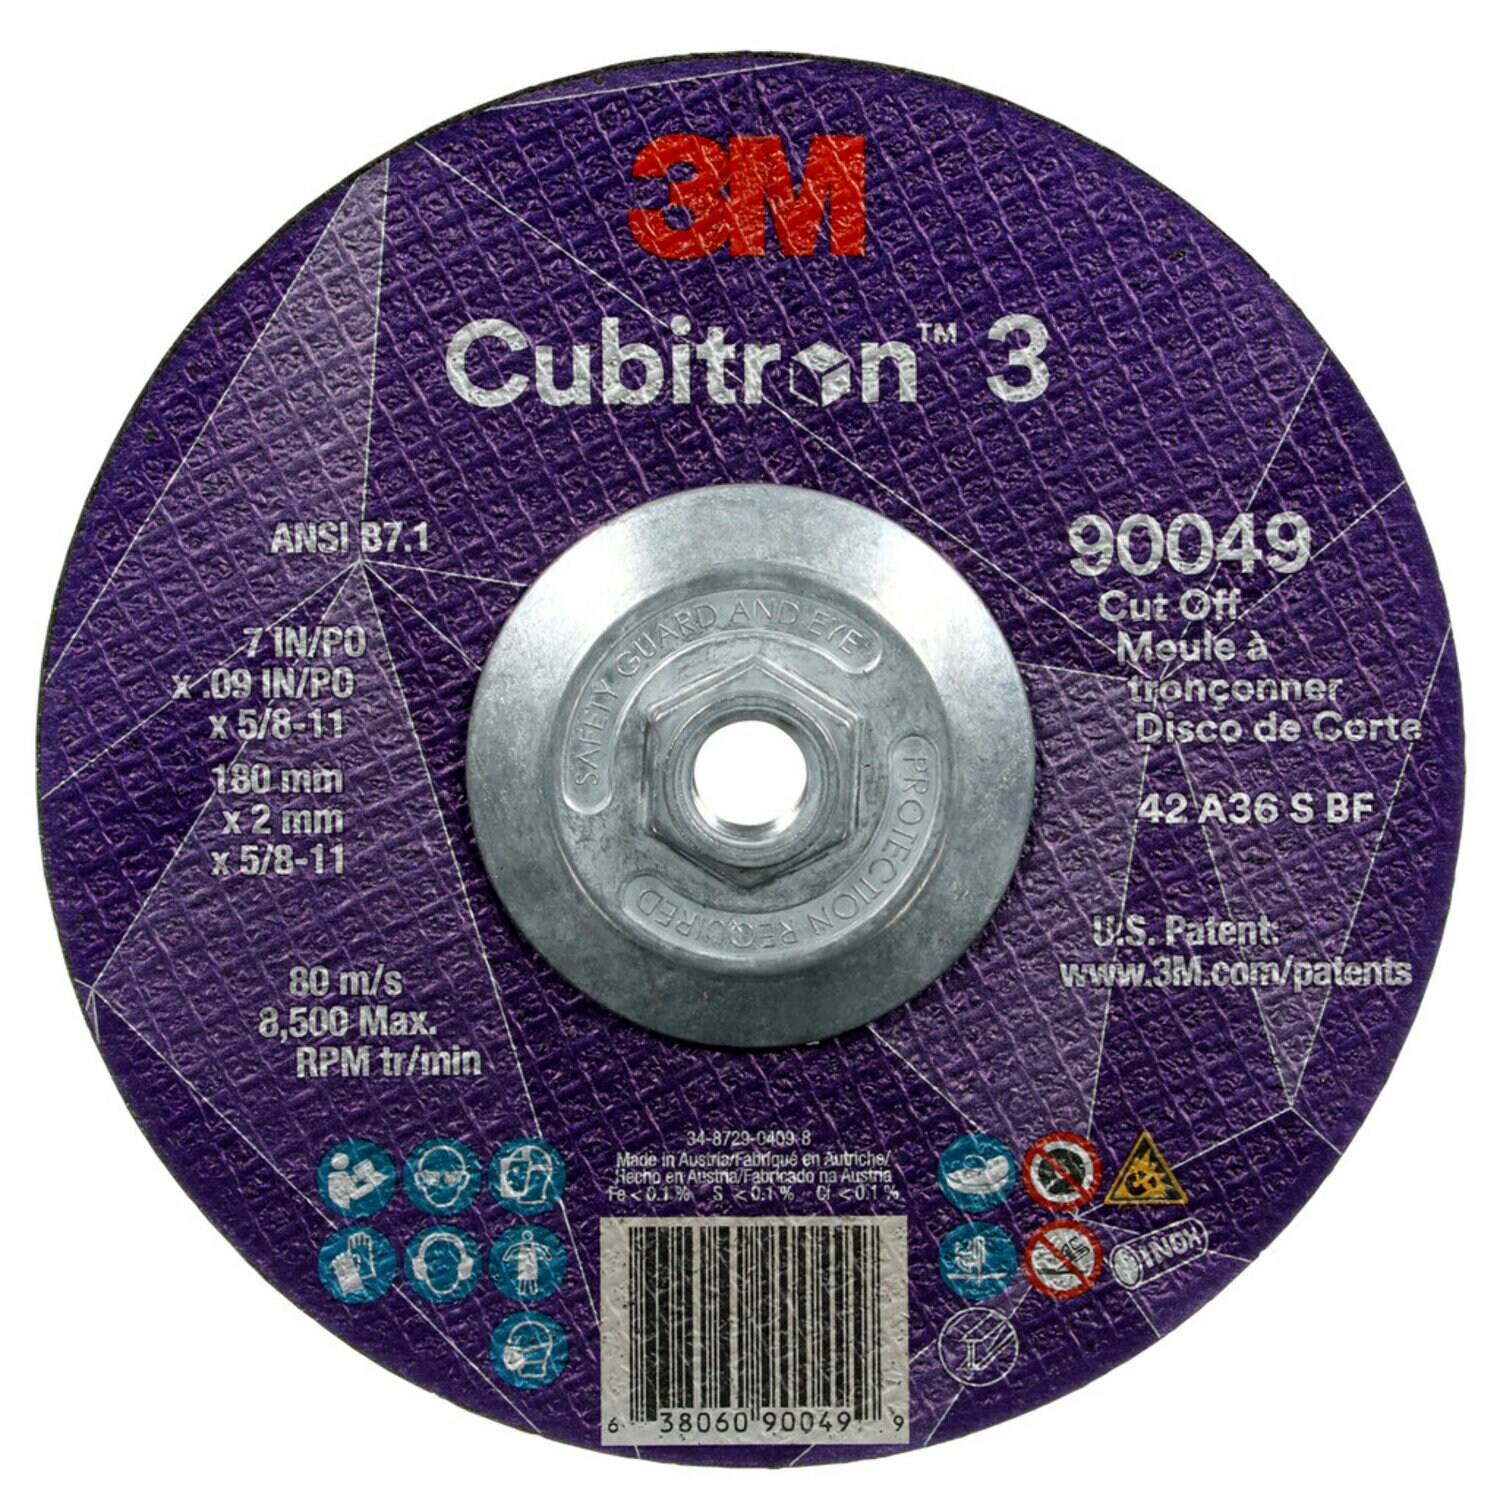 7100312963 - 3M Cubitron 3 Cut-Off Wheel, 90049, 36+, T27, 7 in x 0.09 in x 5/8
in-11 (180 x 2 mm x 5/8-11 in), ANSI, 10 ea/Case